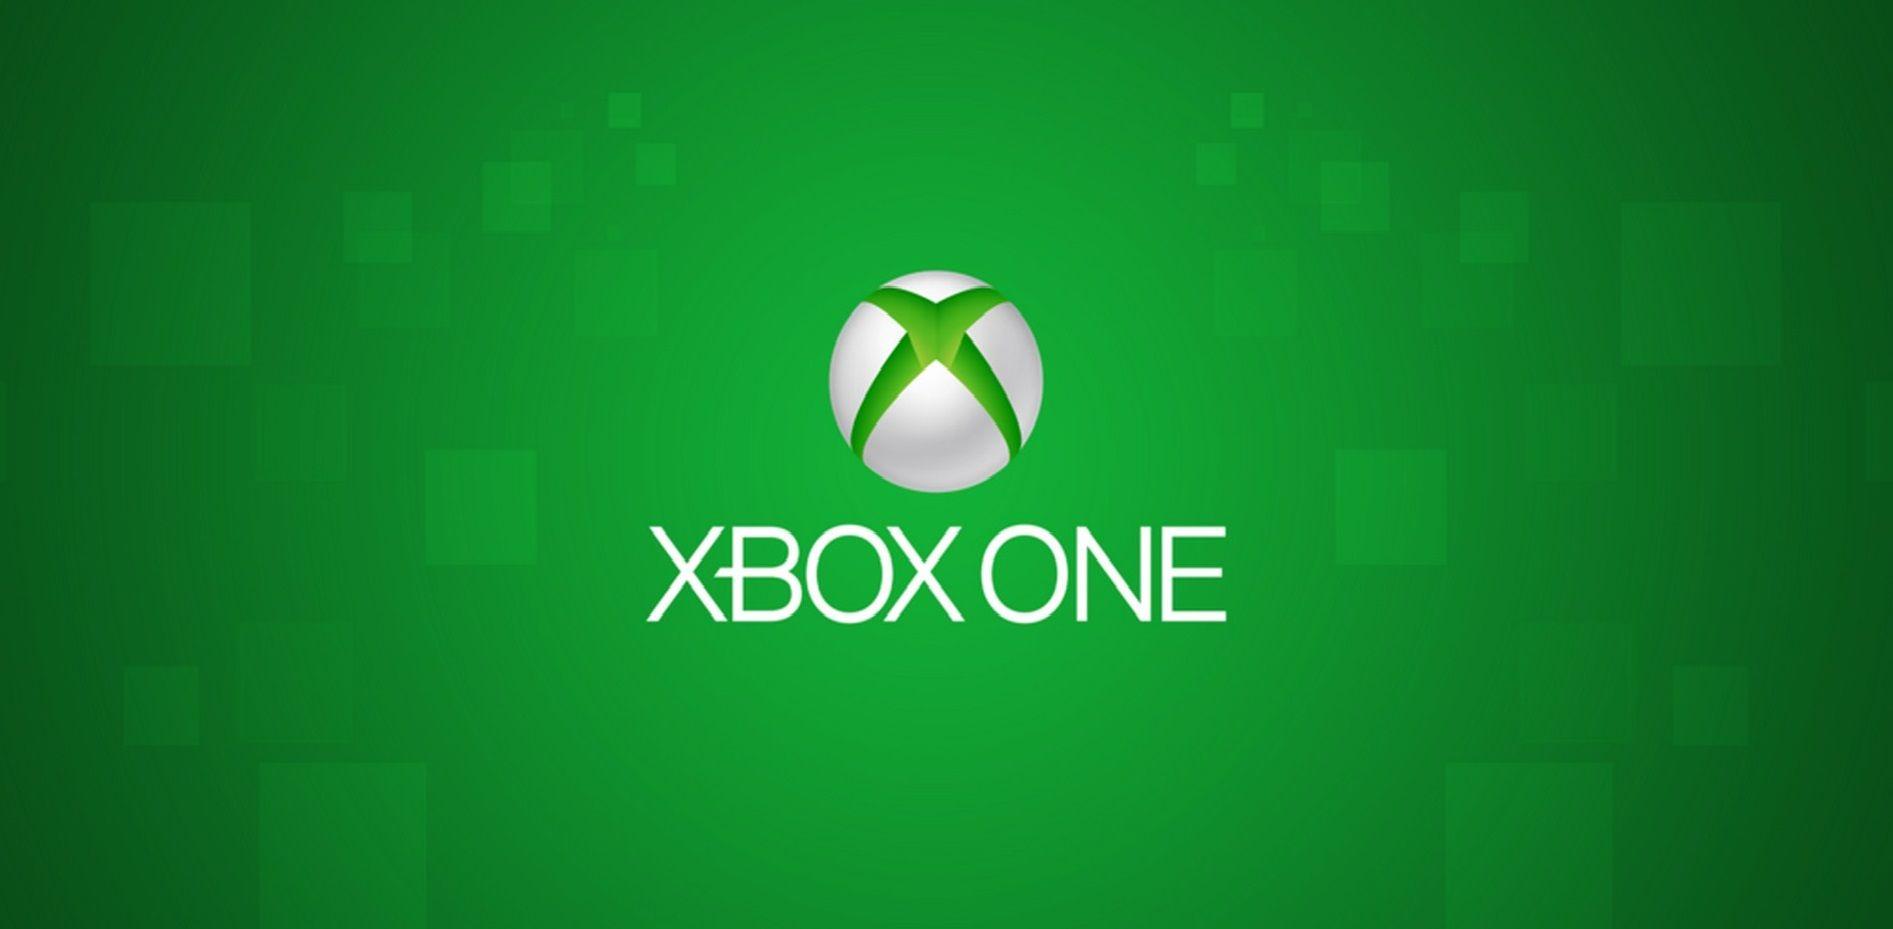 Những hình nền HD Xbox Logo sẽ làm cho bạn mong muốn chơi game ngay lập tức. Với chất lượng hình ảnh tuyệt đẹp và sự ấn tượng của logo Xbox, bạn sẽ sớm trở nên say mê với nó. Hãy xem hình ảnh liên quan và trải nghiệm cảm giác thực sự của nó.